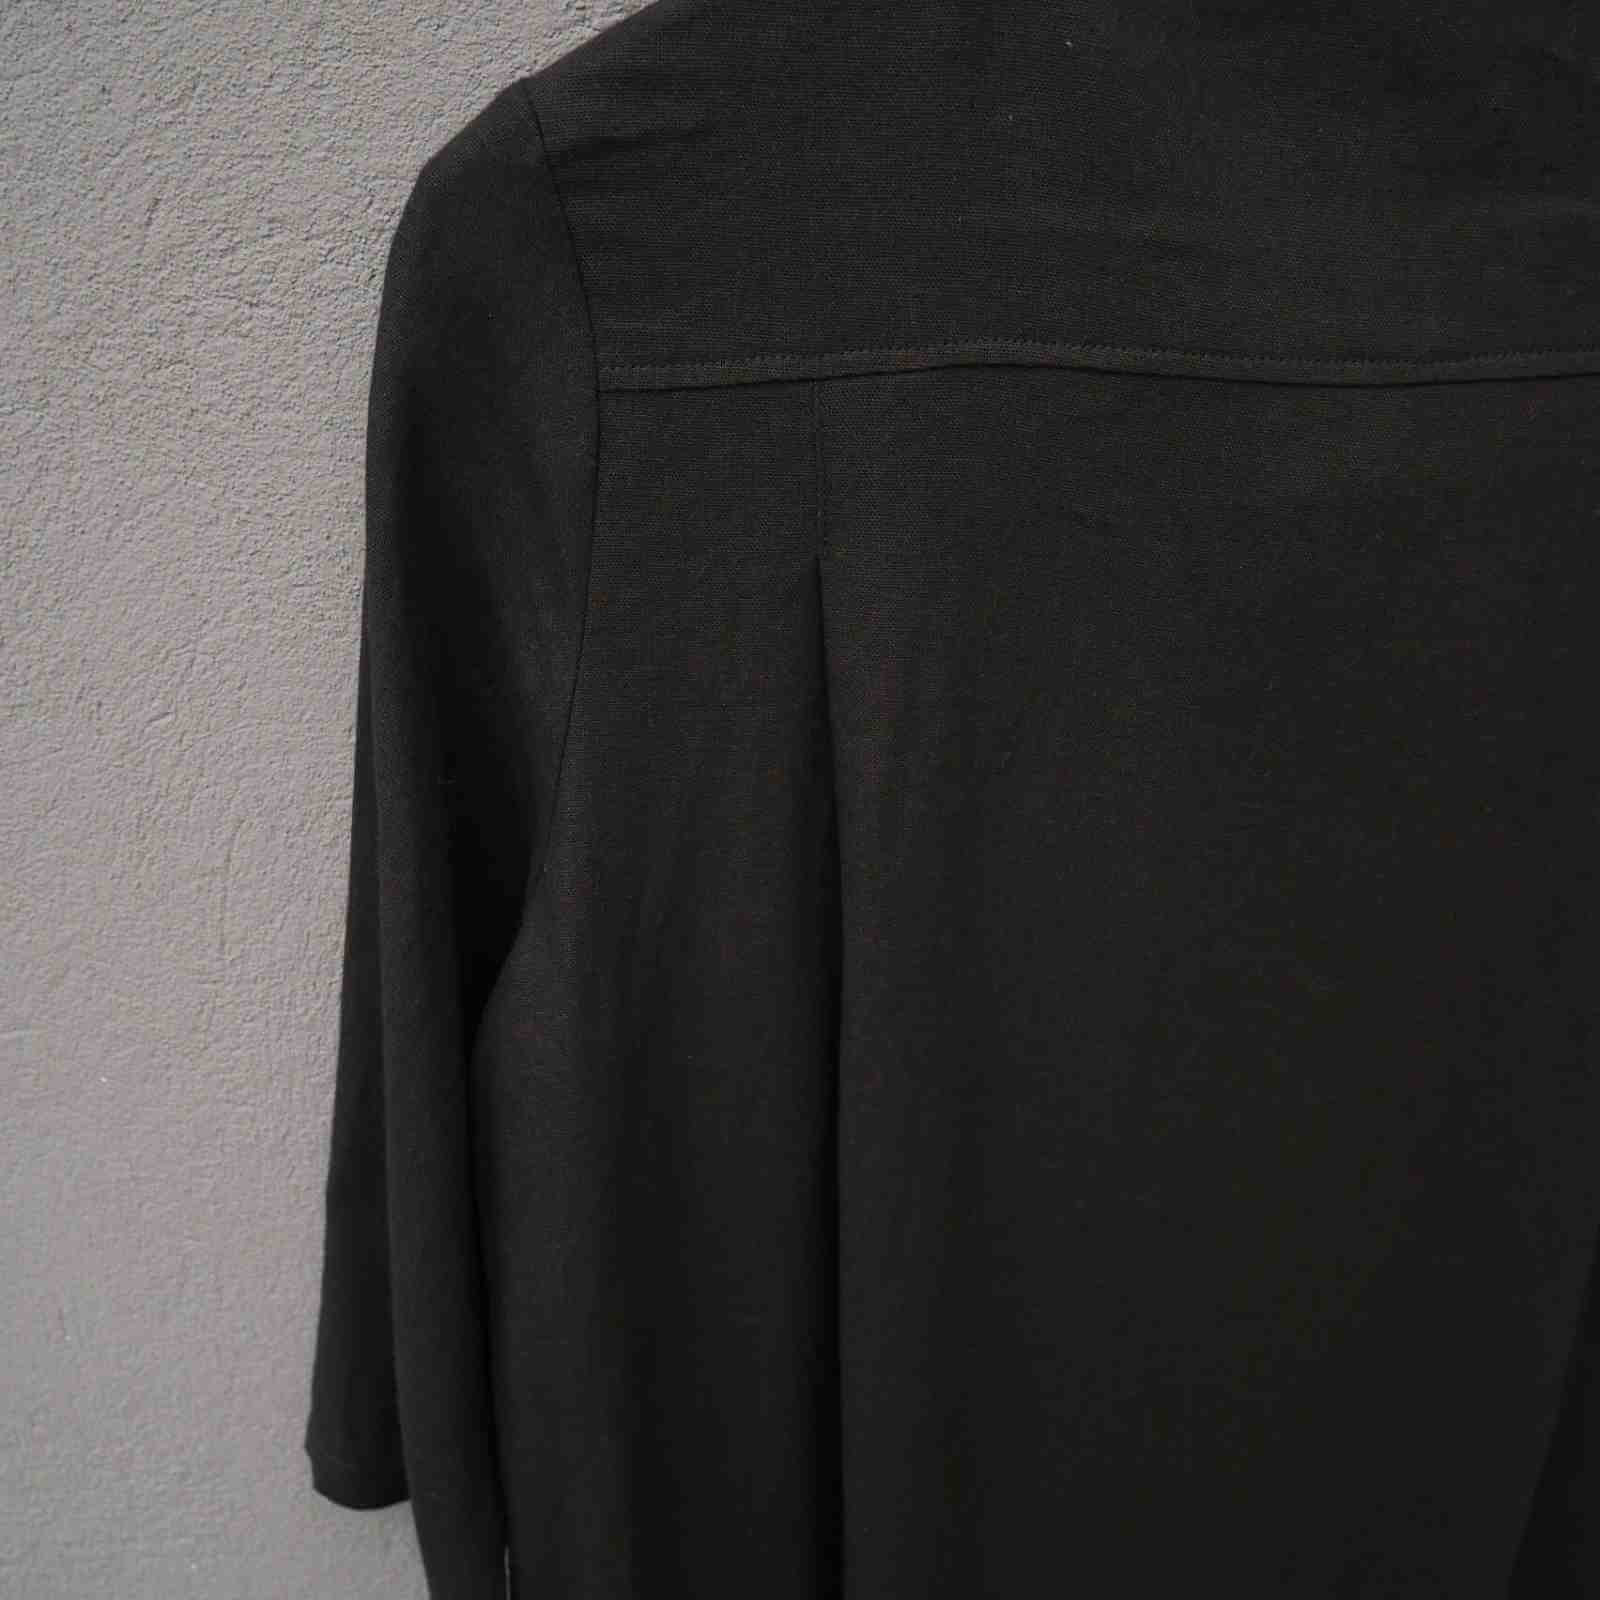 Læg detalje på ryggen af sort hørkjole fra E-Avantgarde